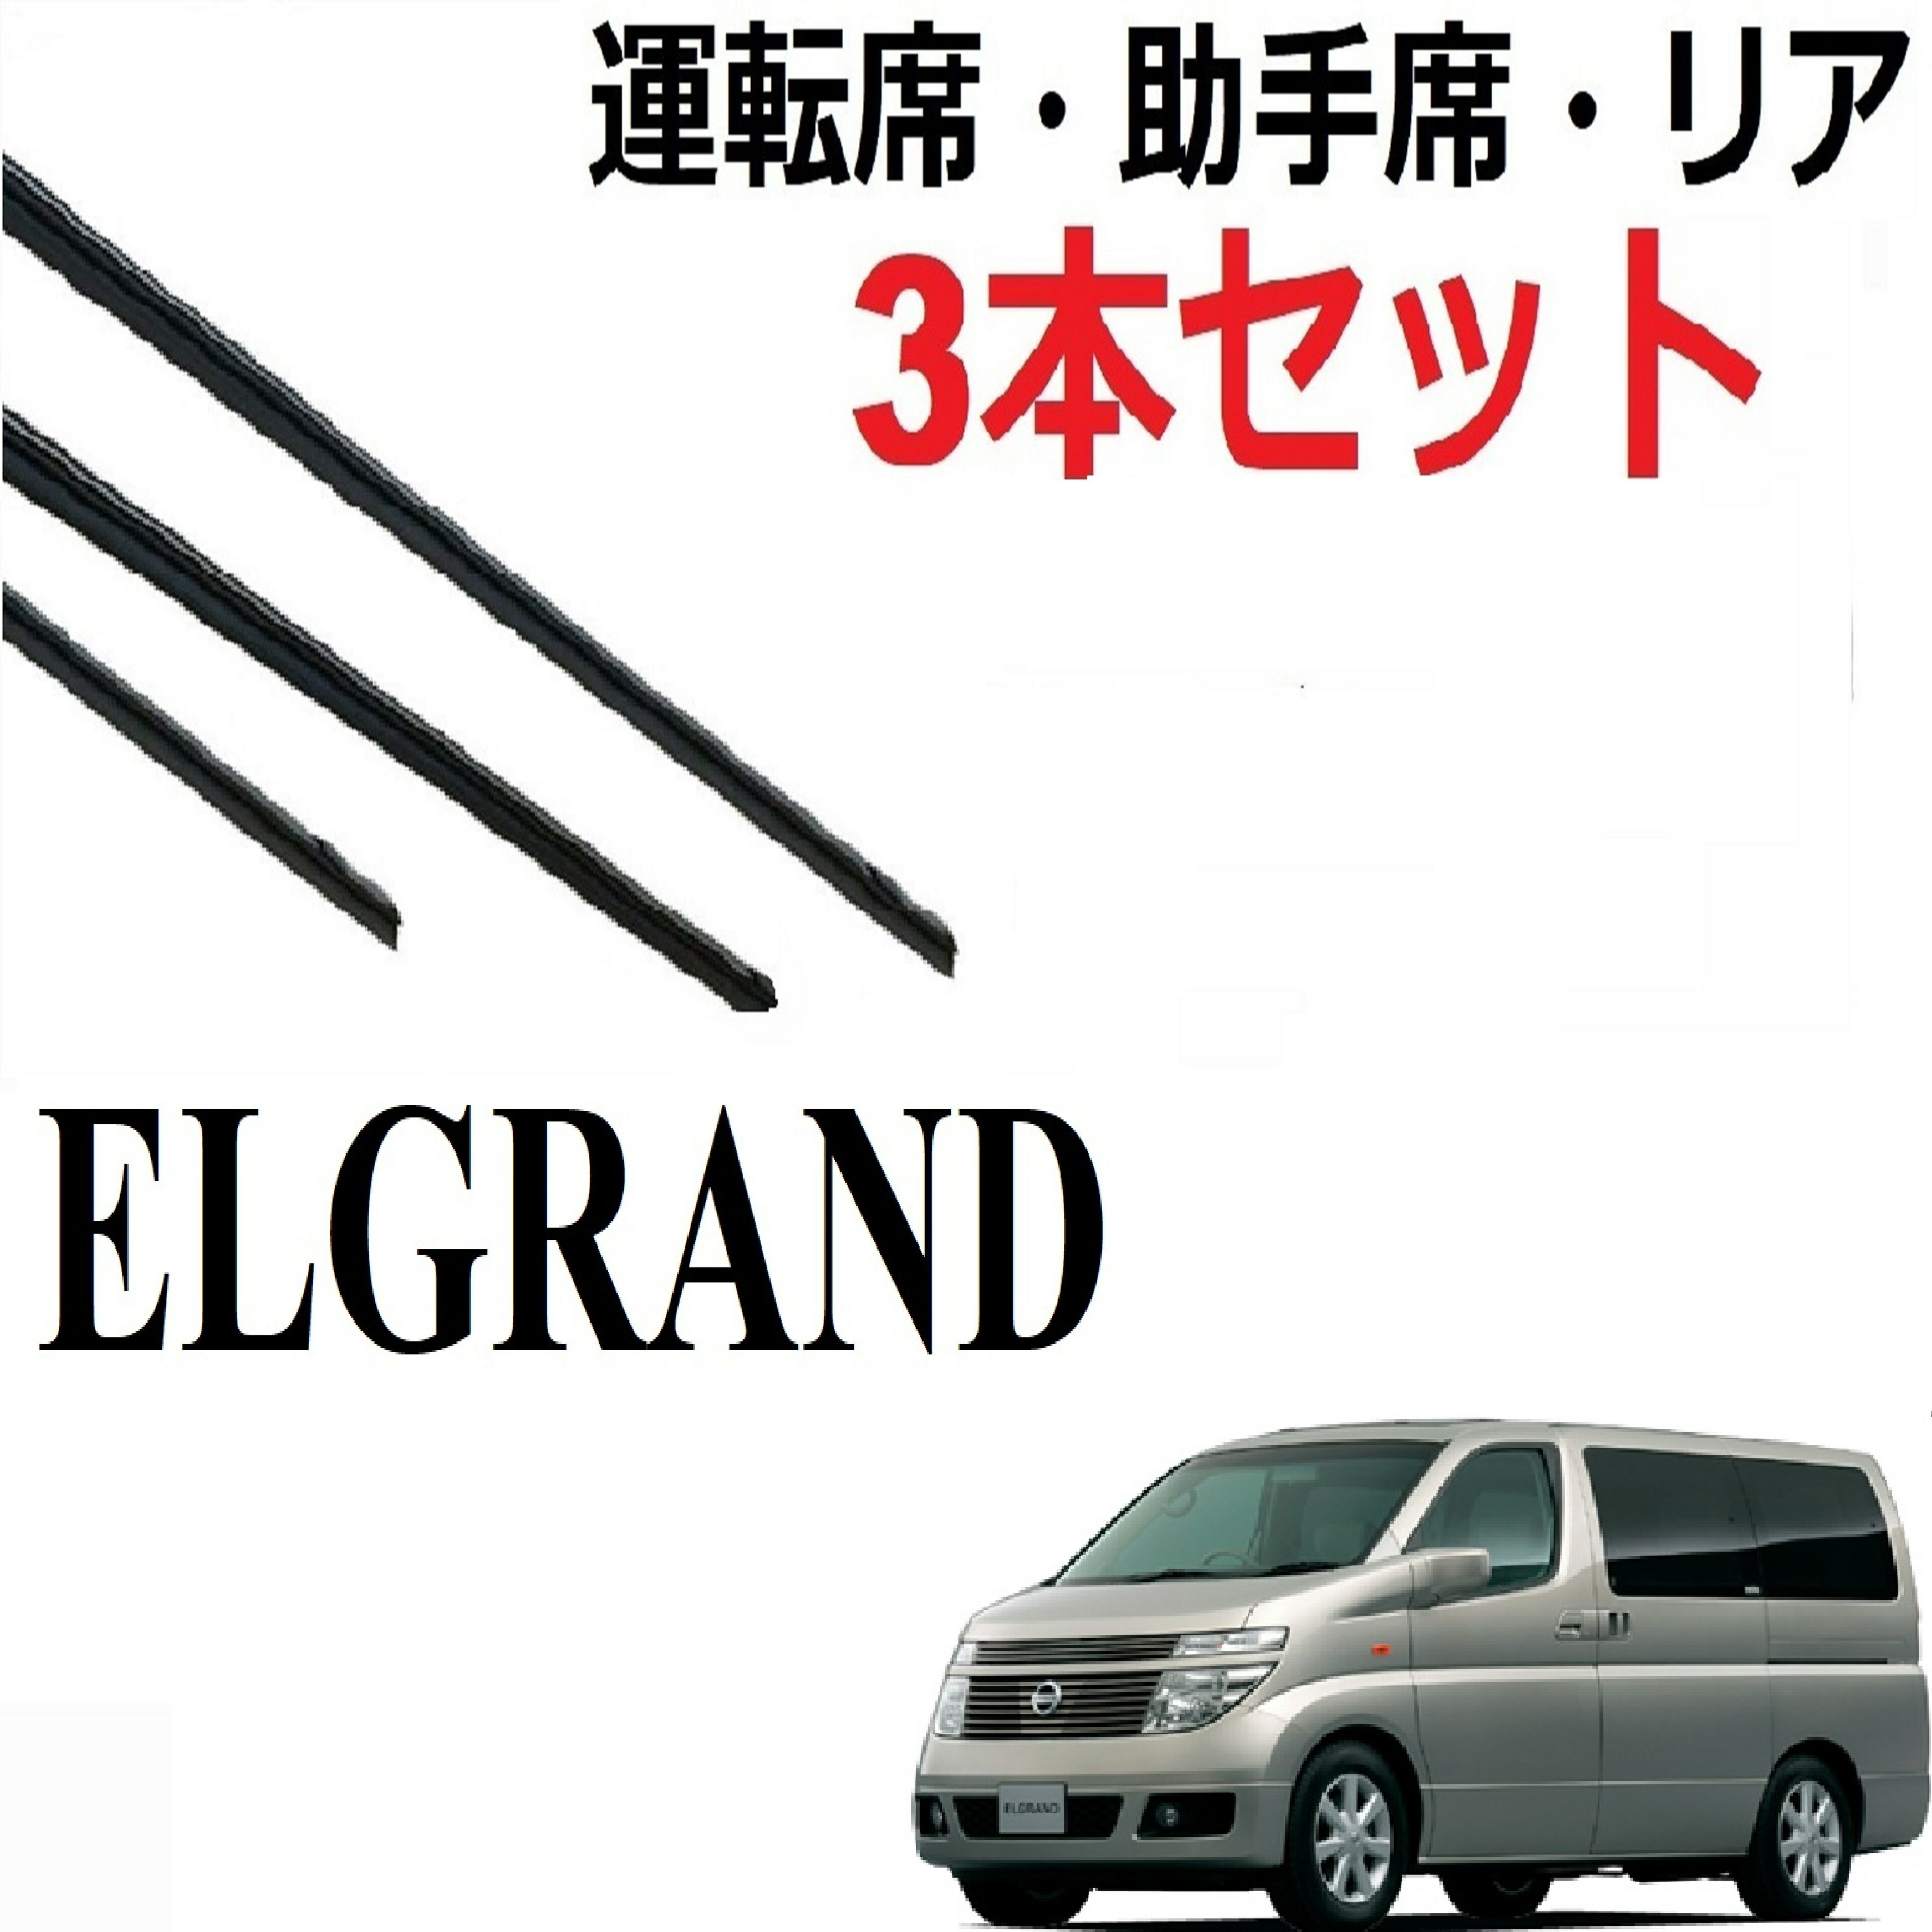 エルグランド 専用ワイパー 替えゴム 純正互換品 3本入りセット 運転席 助手席 リア サイズ ELGRAND E51 ME51 MNE51 NE51 ラバー ワイパー研究所